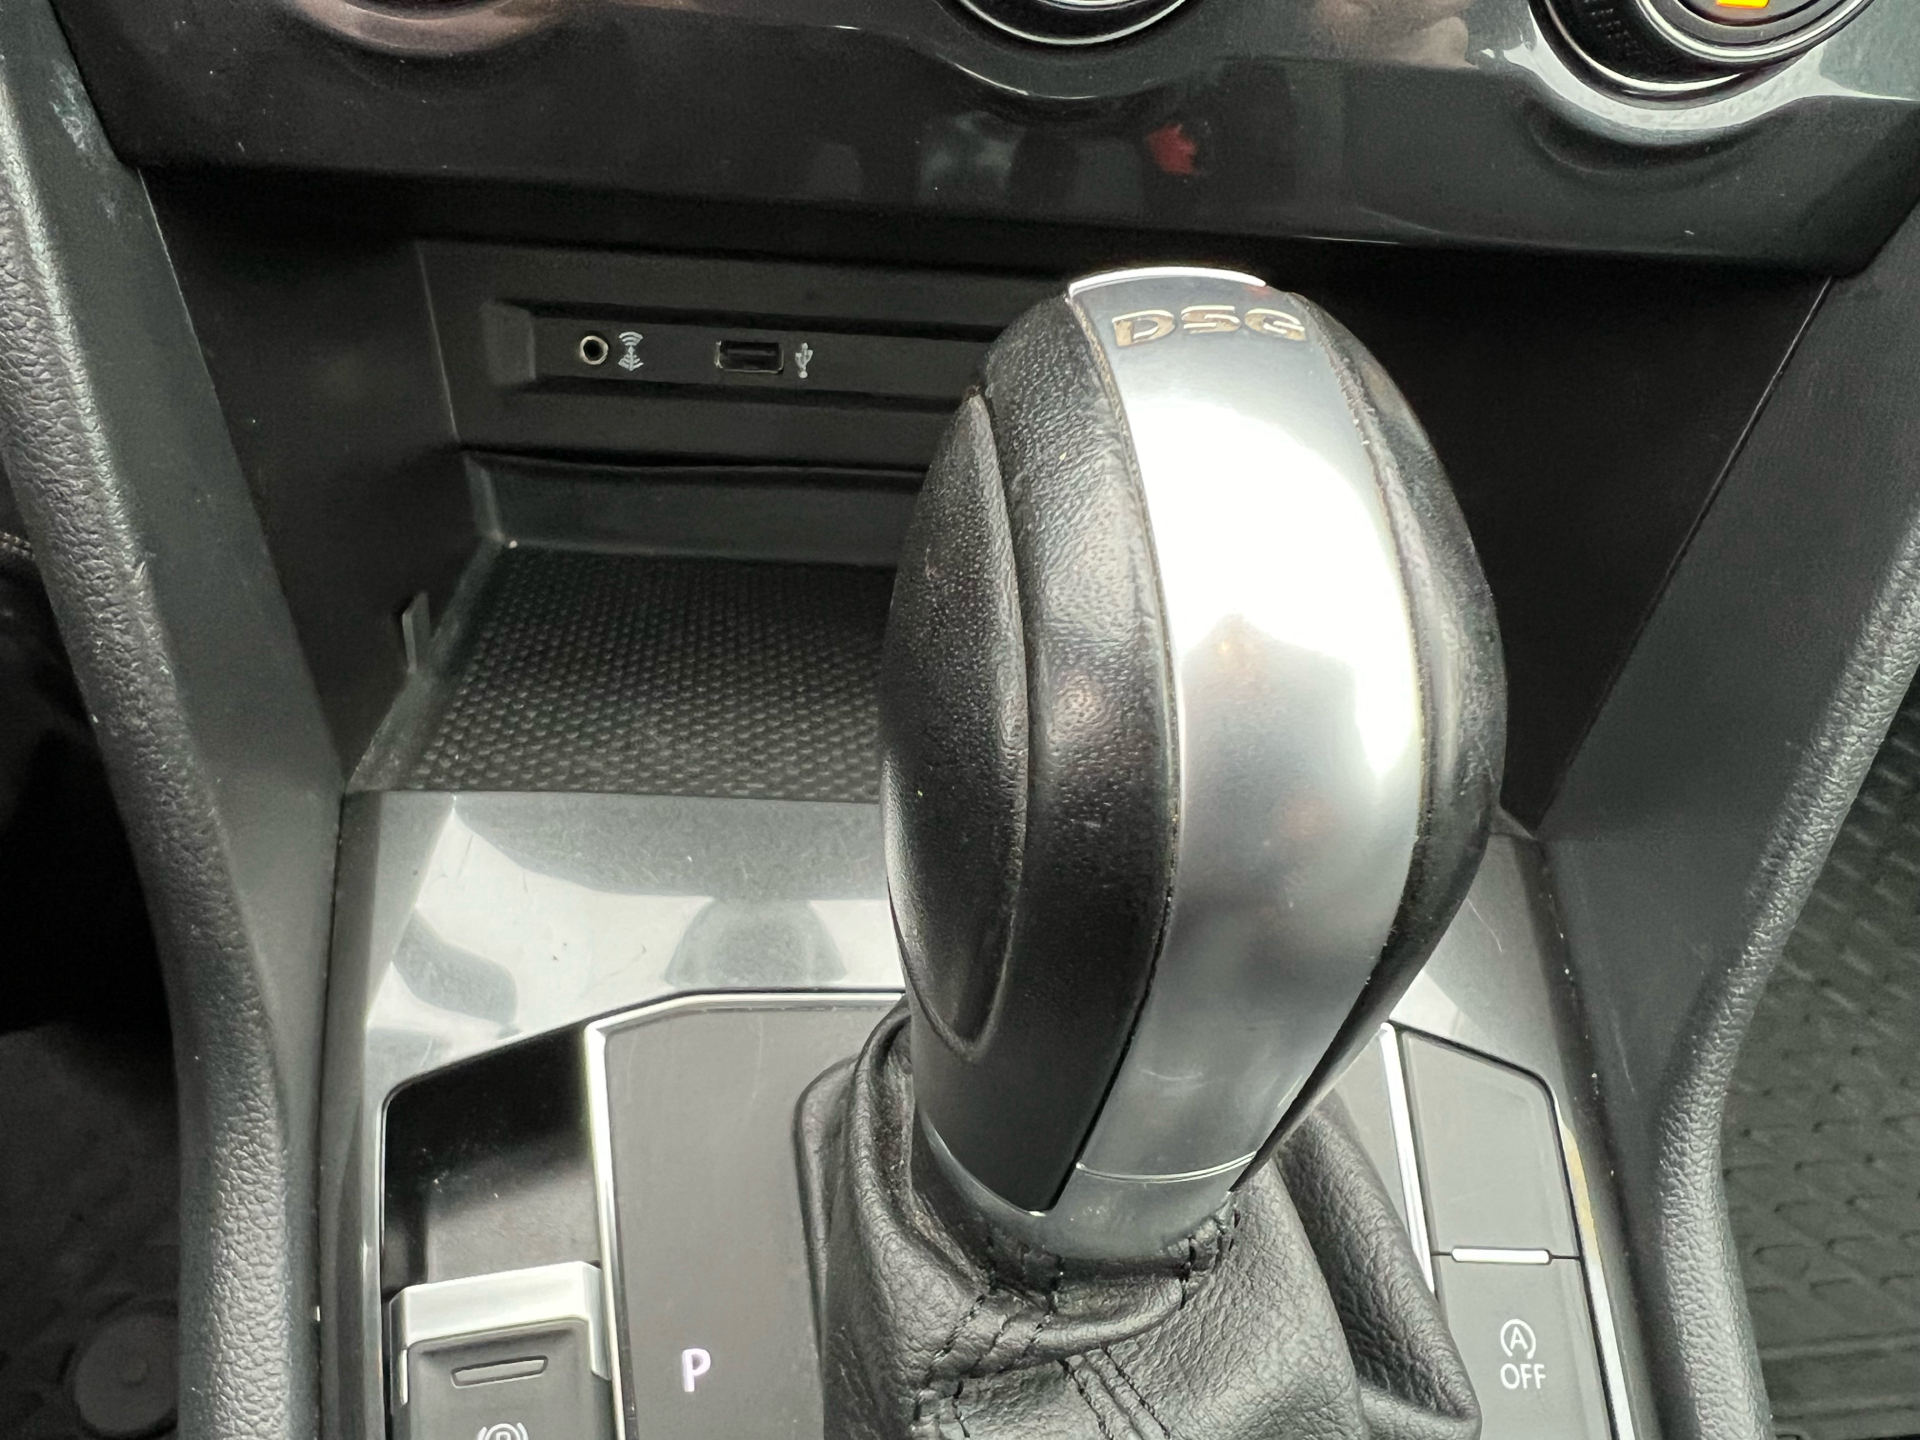 Billede af VW Tiguan 2,0 TDI BMT SCR Comfortline 4Motion DSG 150HK Van 7g Aut.